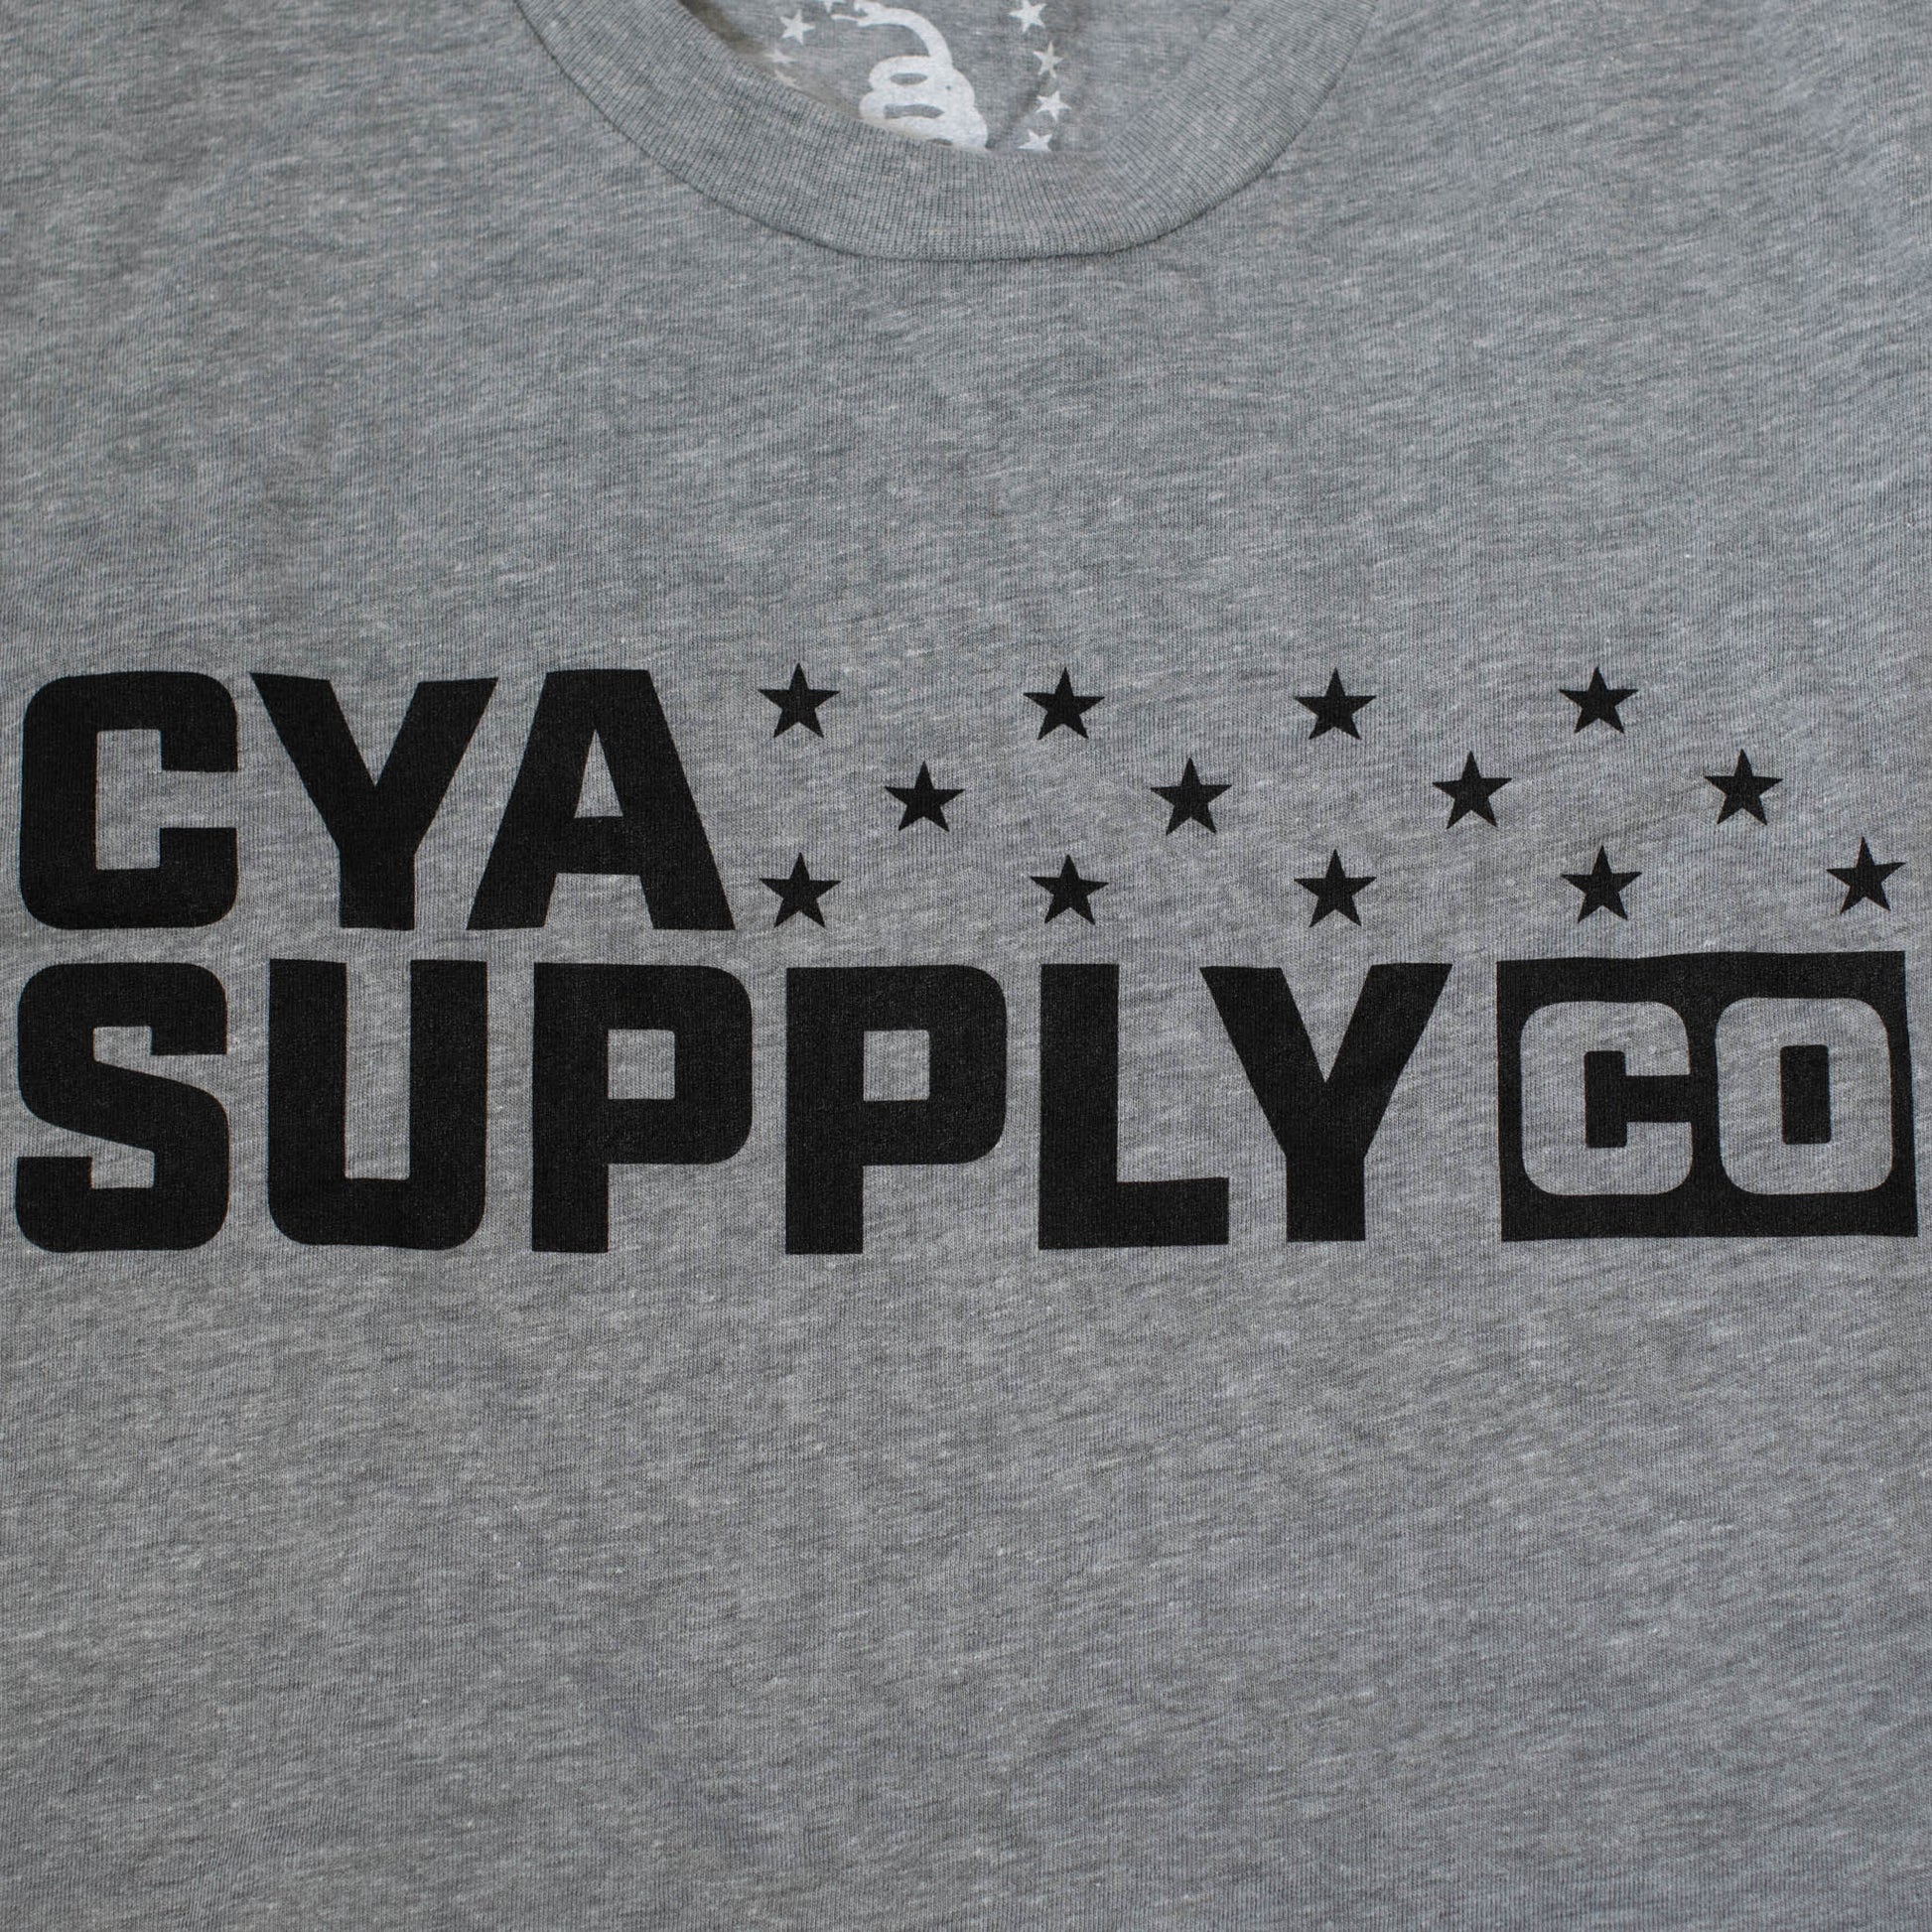 CYA SUPPLY 13 STARS LOGO T-SHIRT CYA Supply Co.